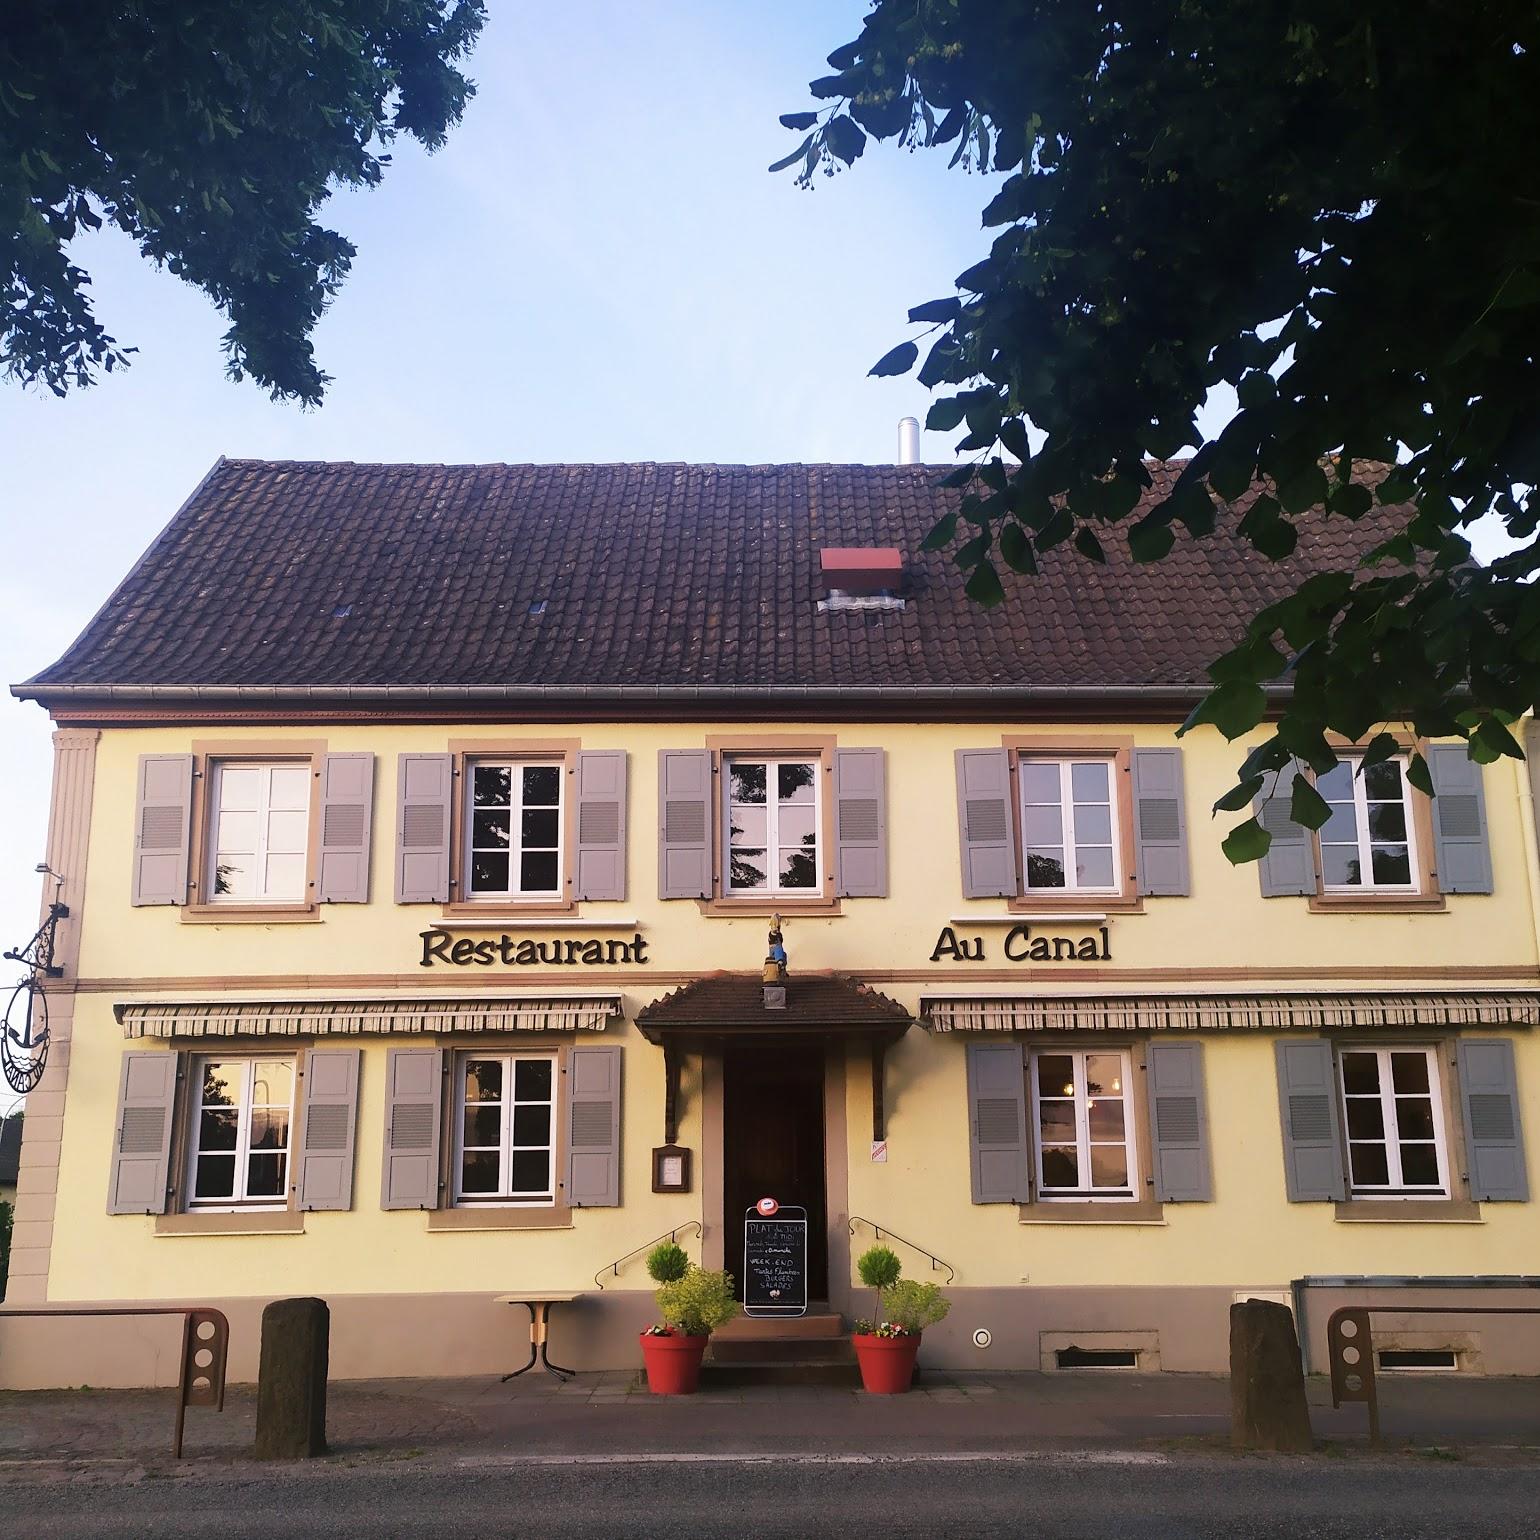 Restaurant "restaurant au canal" in Ergersheim